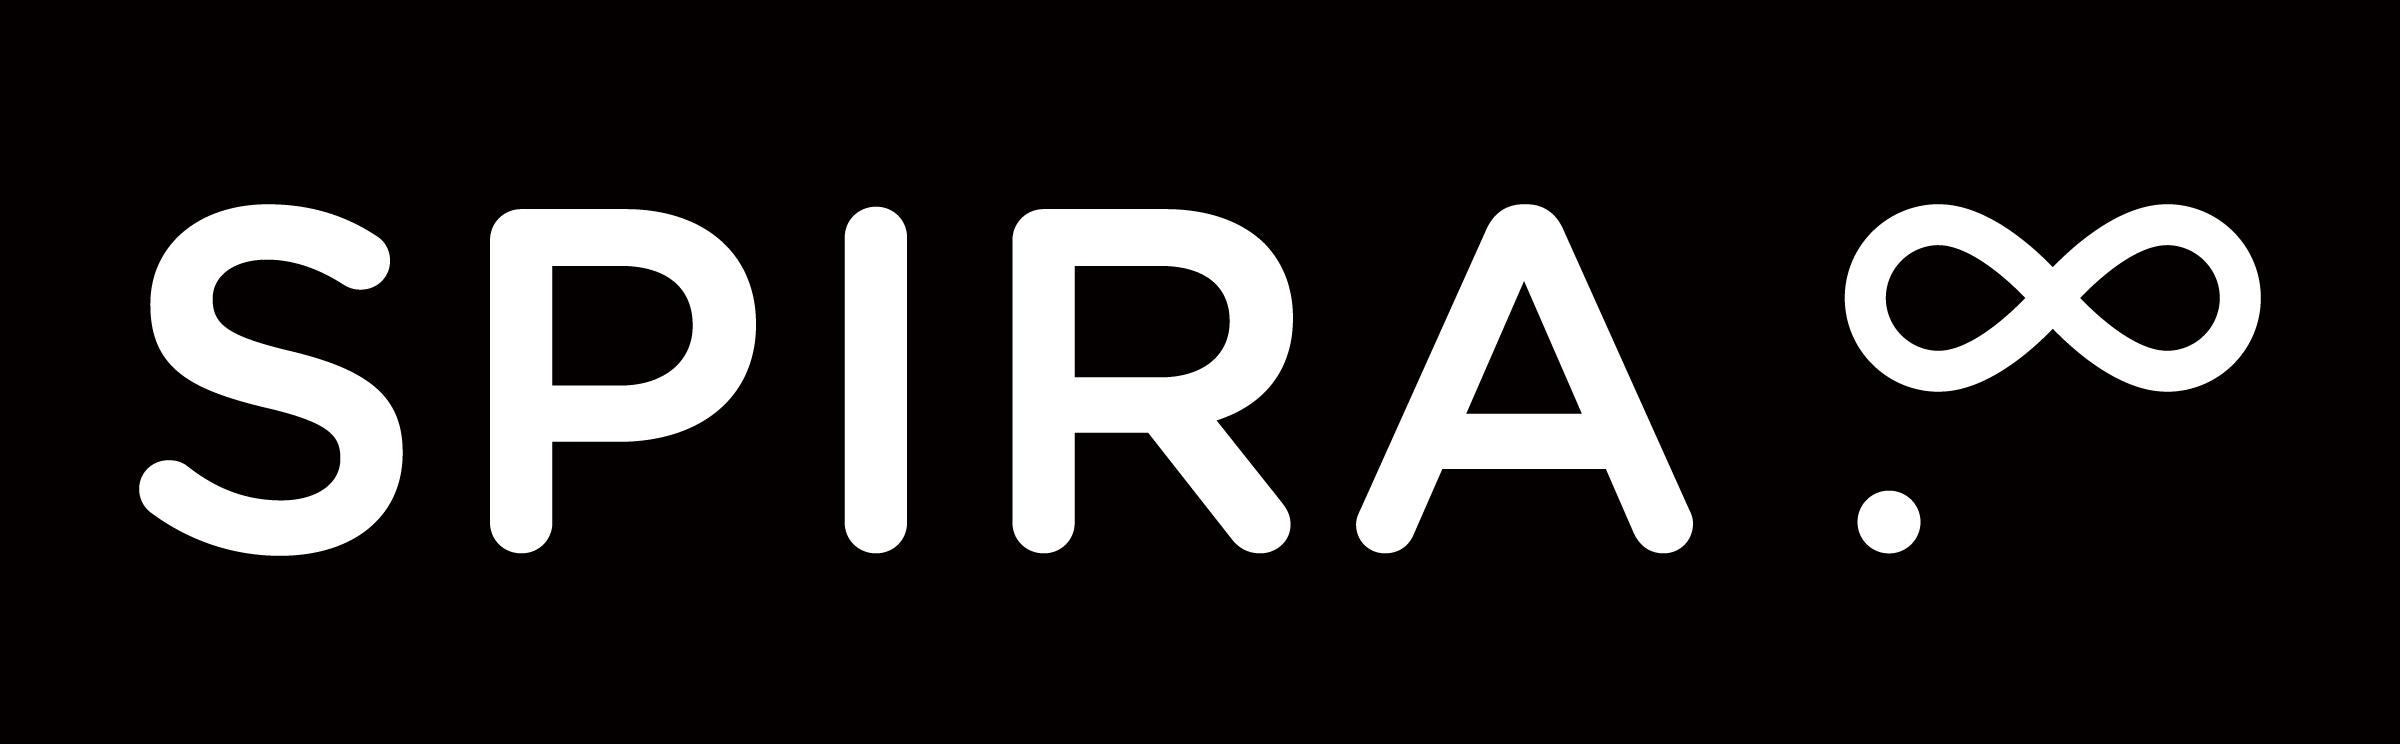 SPIRA Logotype Blanc sur noir